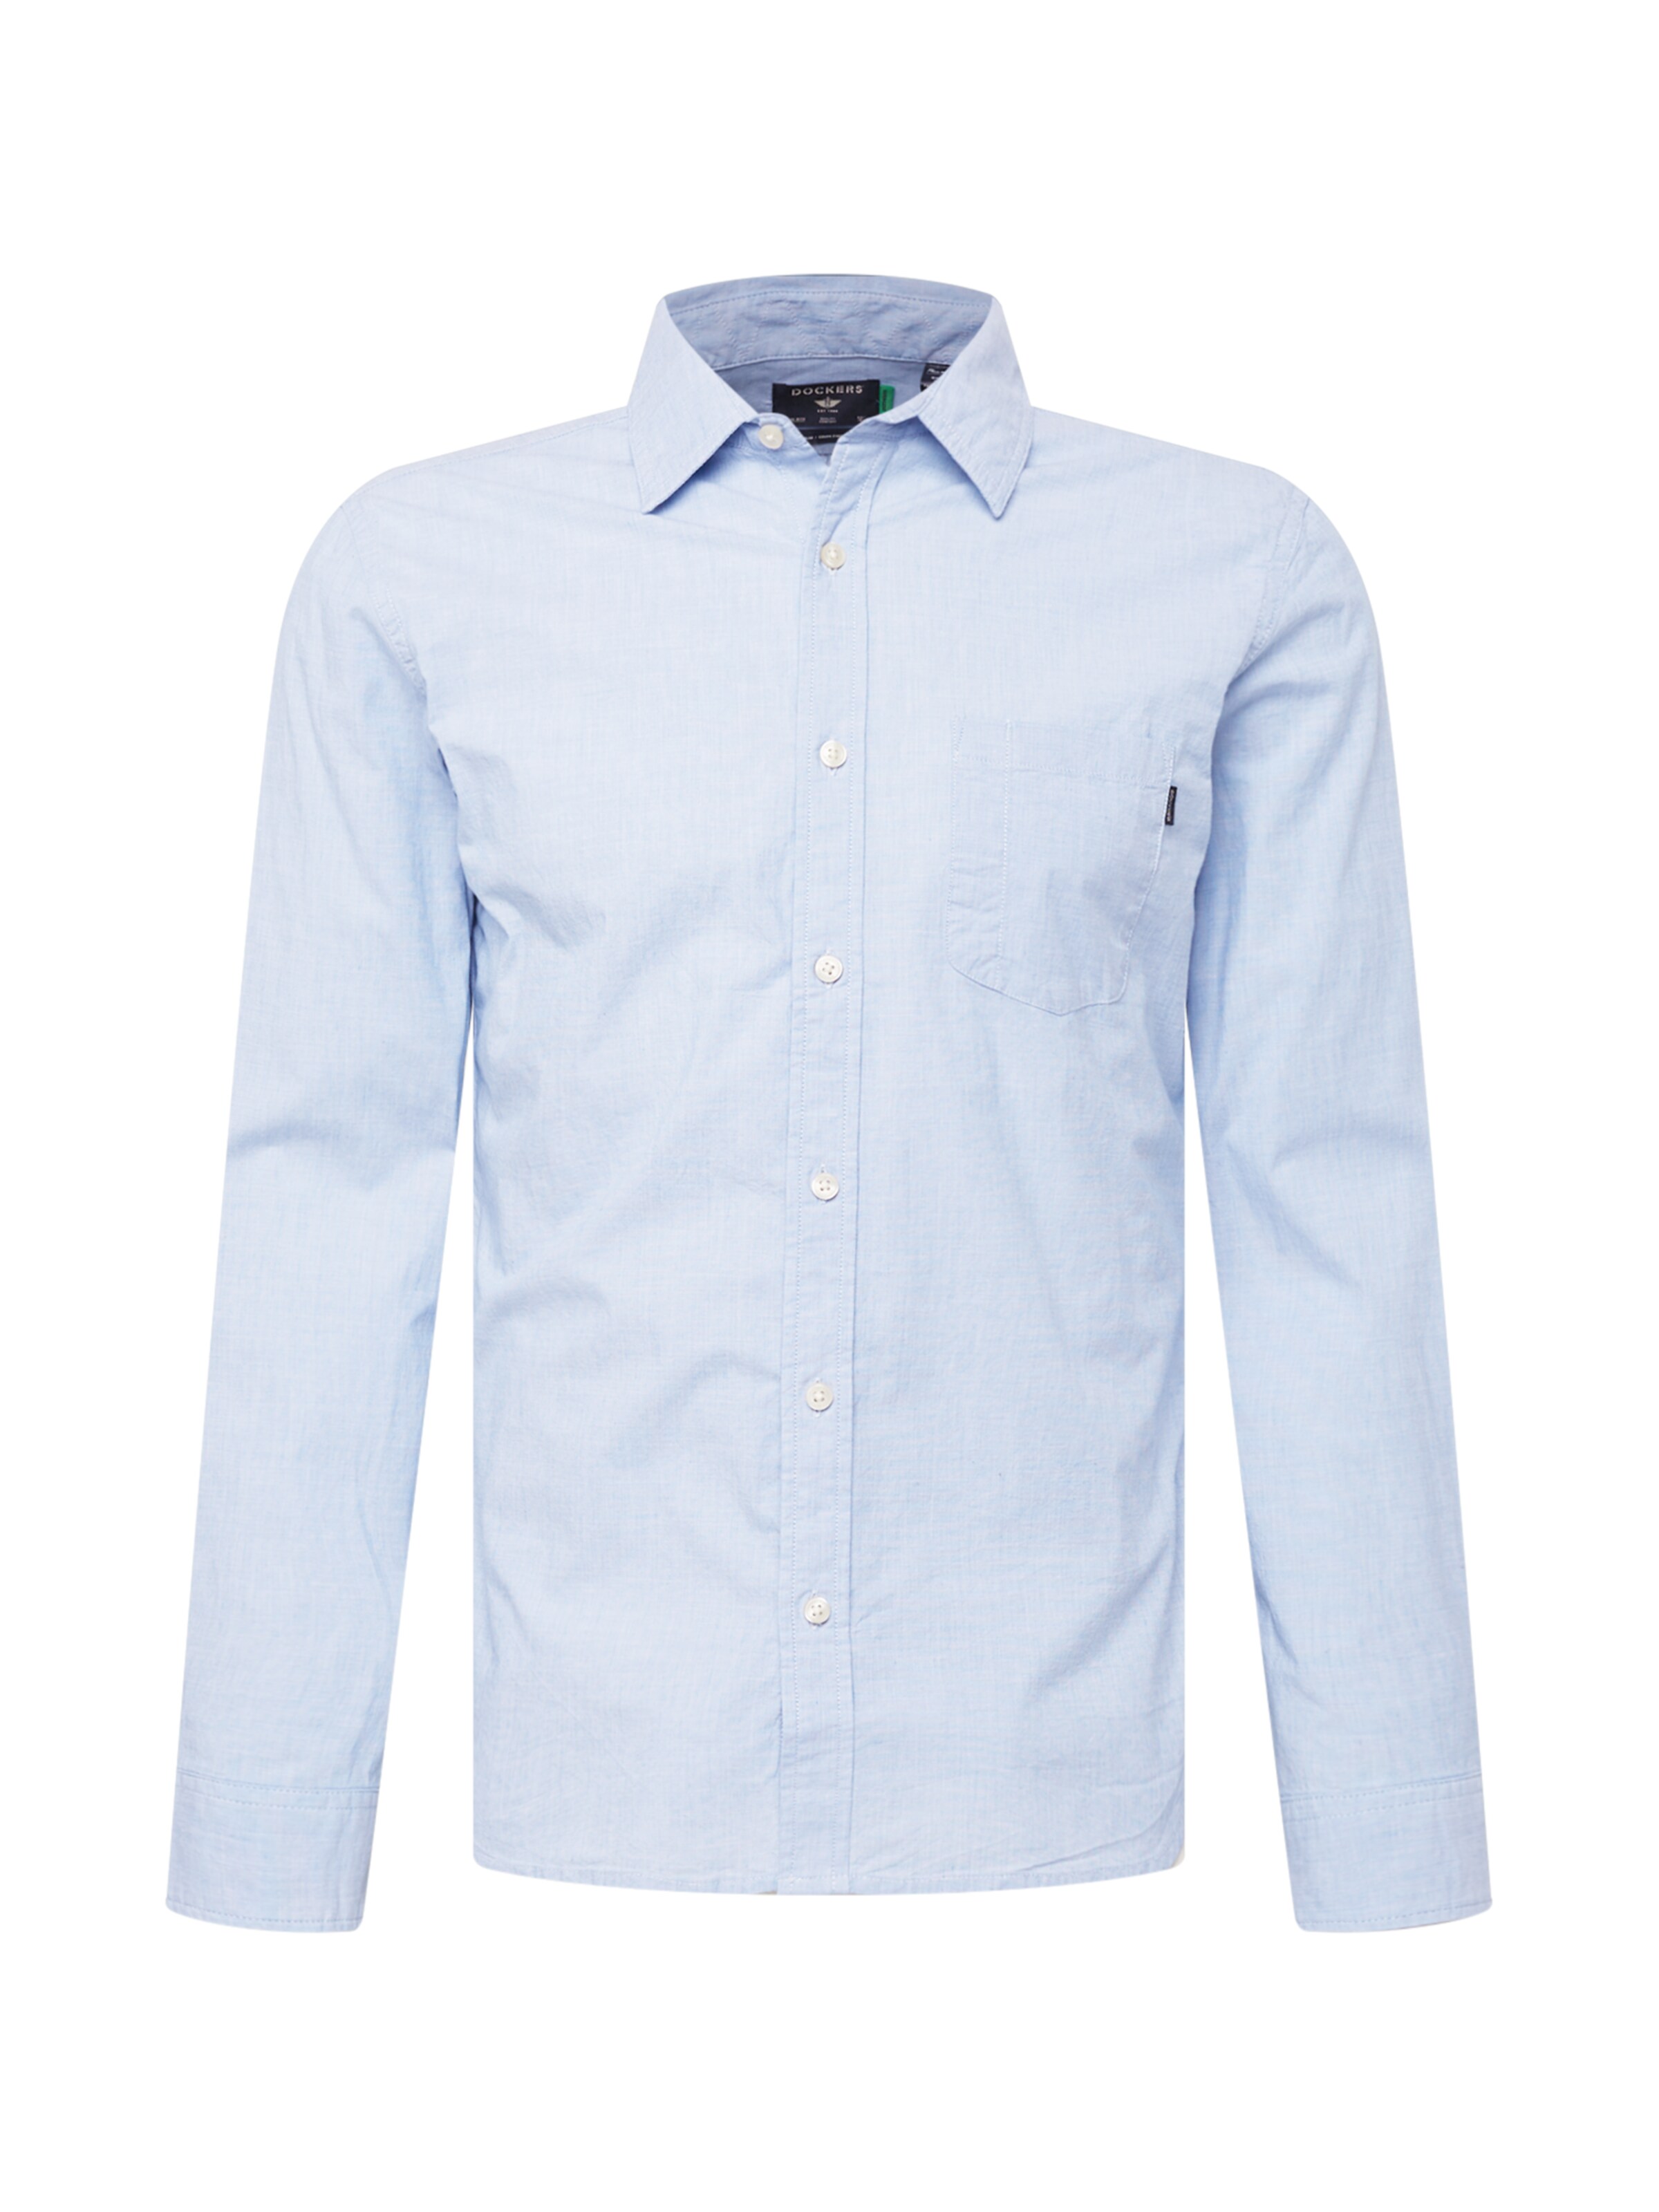 XL Langarm & Kurzarm Dockers Herren Hemden Dockers Herren Hemd DOCKERS 43/44 blau Hemden Dockers Herren Herren Kleidung Dockers Herren Hemden 